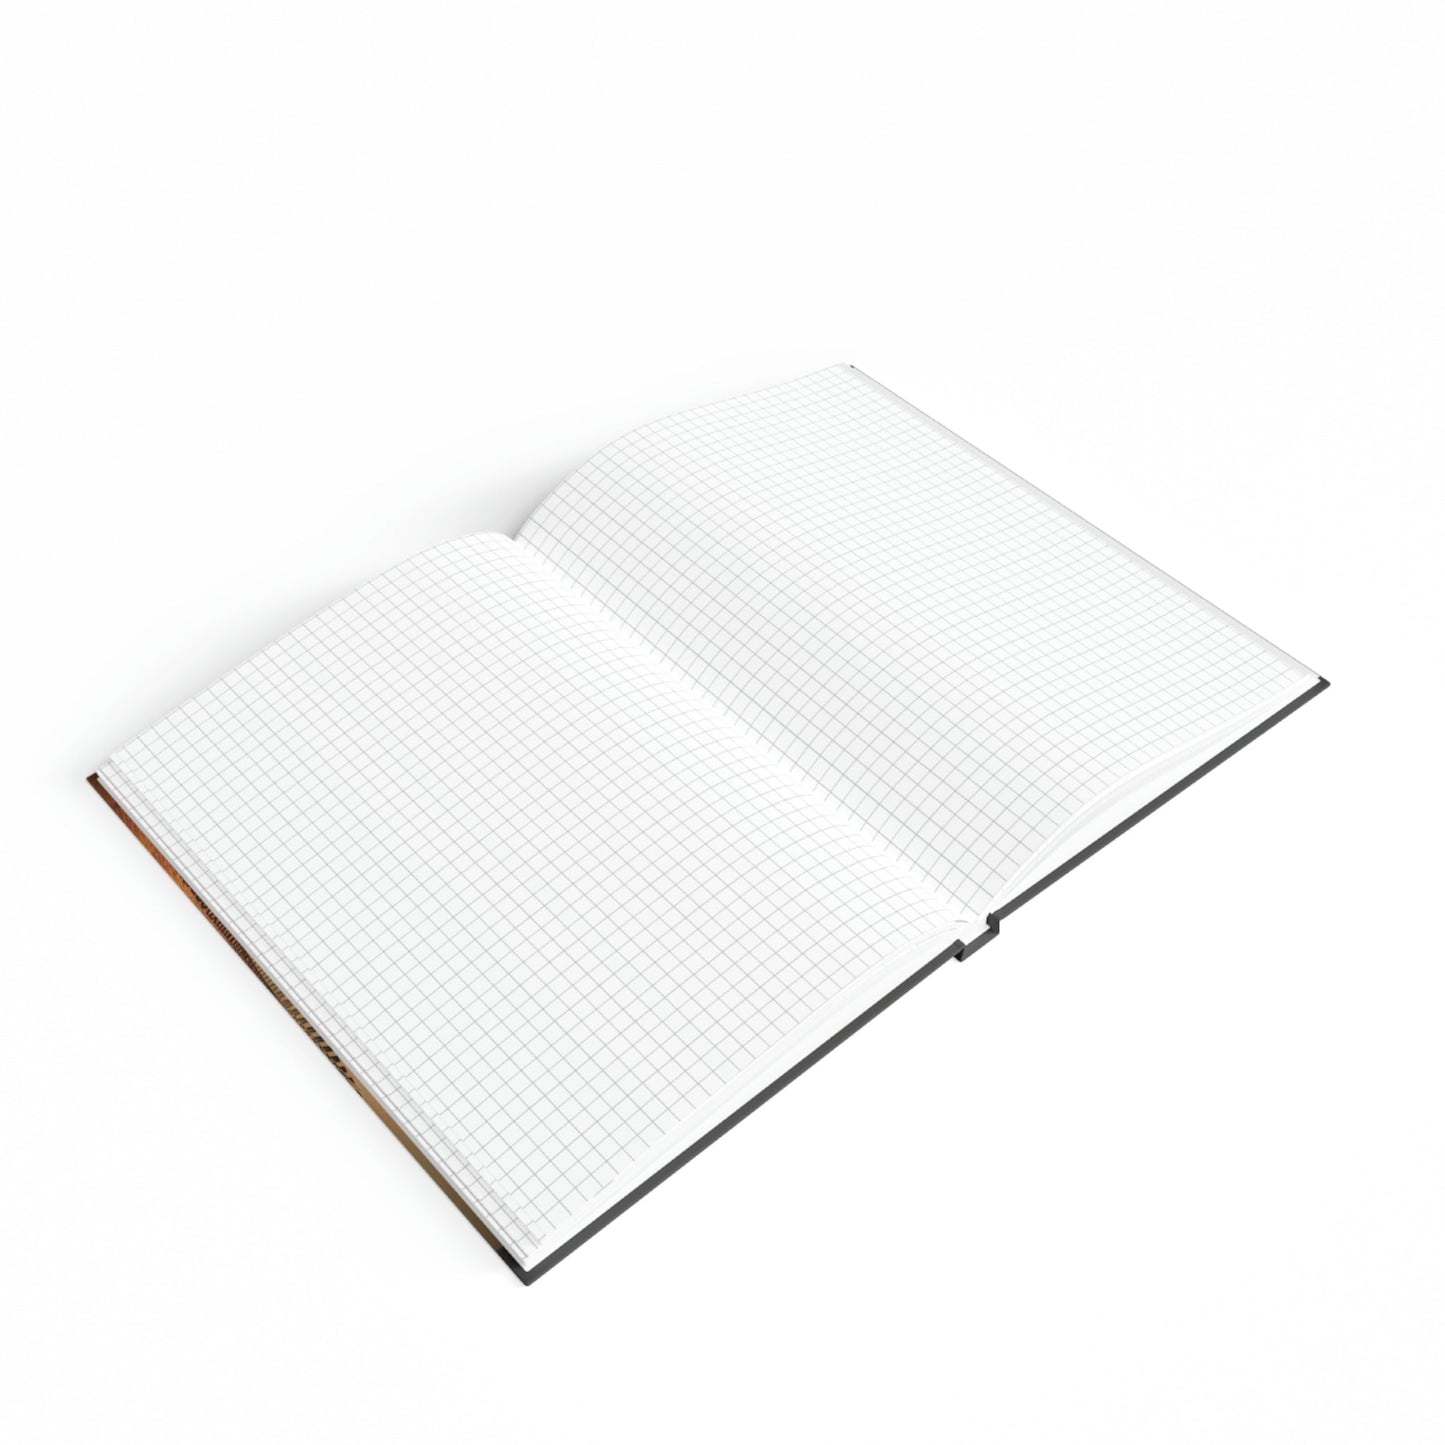 Boy's Sketchbook - Hard Backed Journal